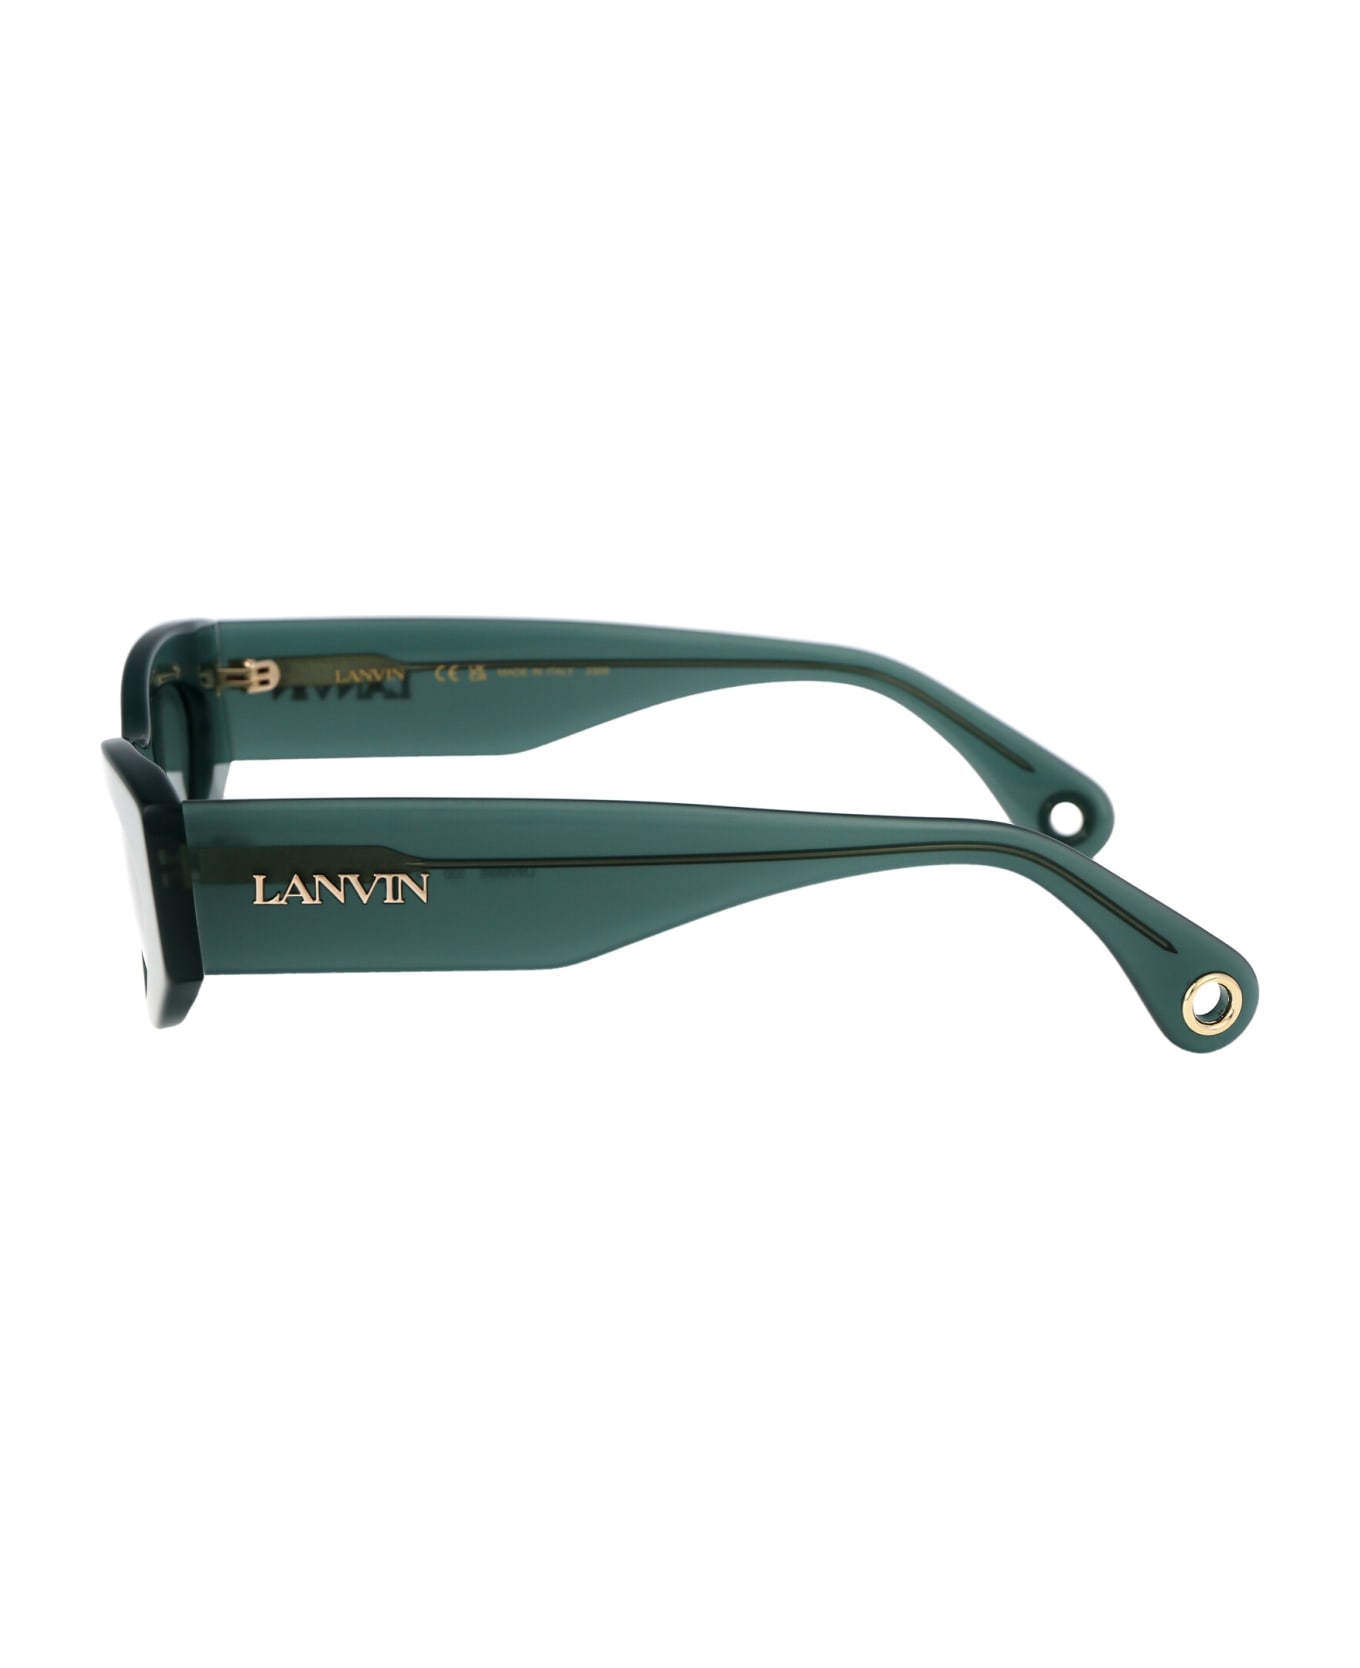 Lanvin Lnv669s Sunglasses - 330 GREEN